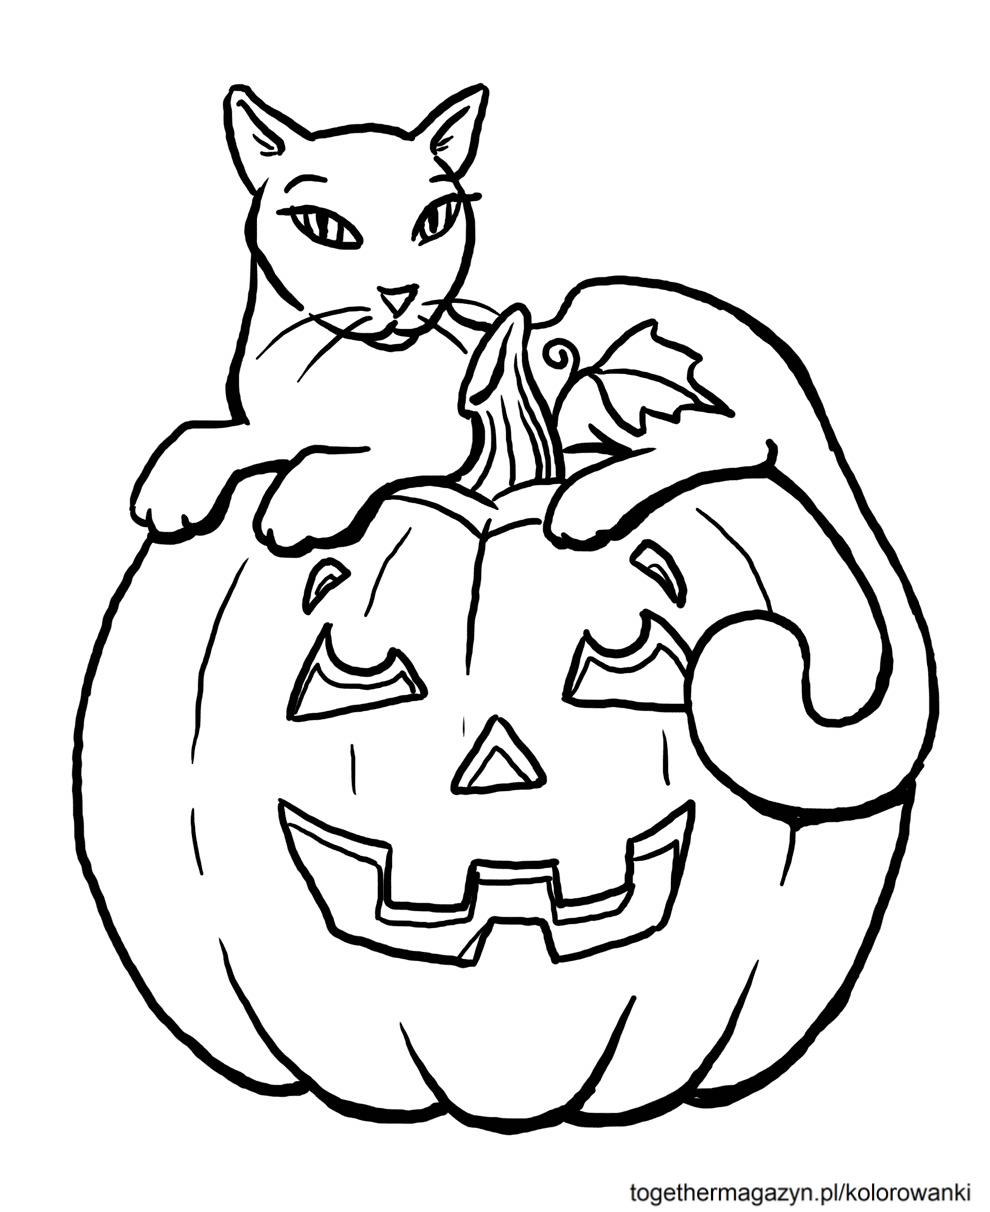 Halloween kolorowanki - wydrukuj i pokoloruj za darmo kota na dyni na Halloween!